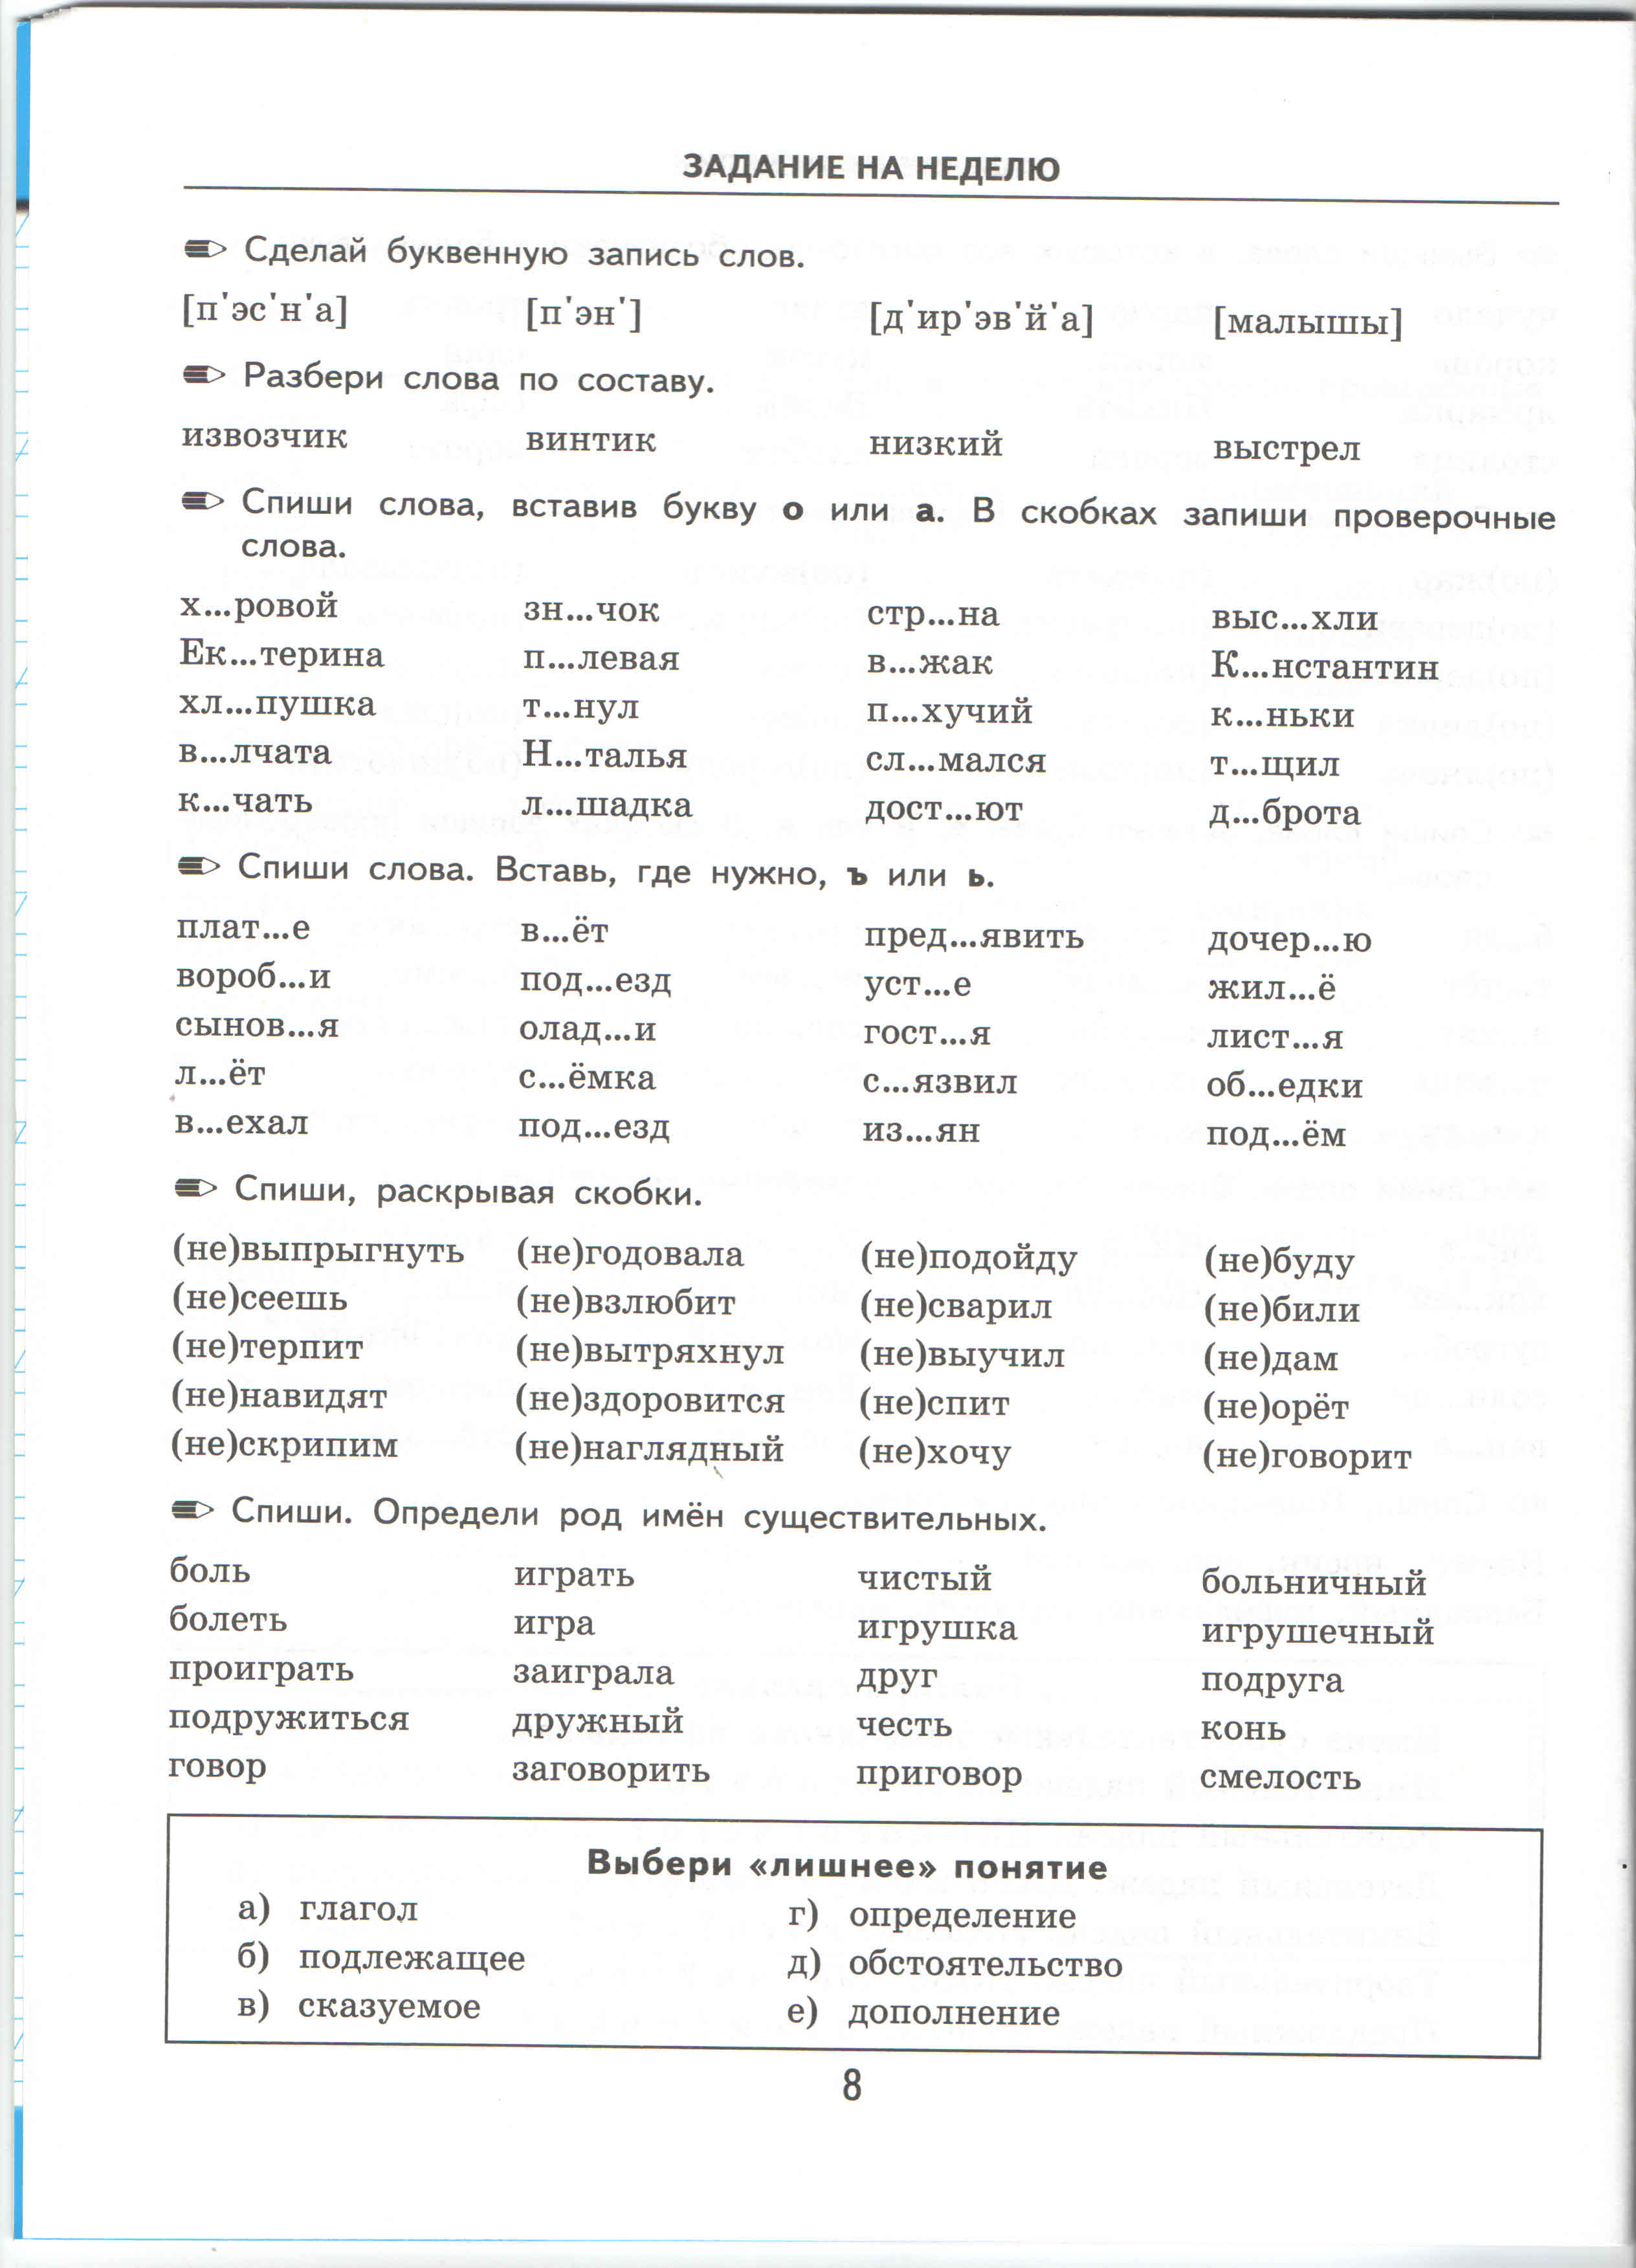 Выполнение задания по русскому языку по фото